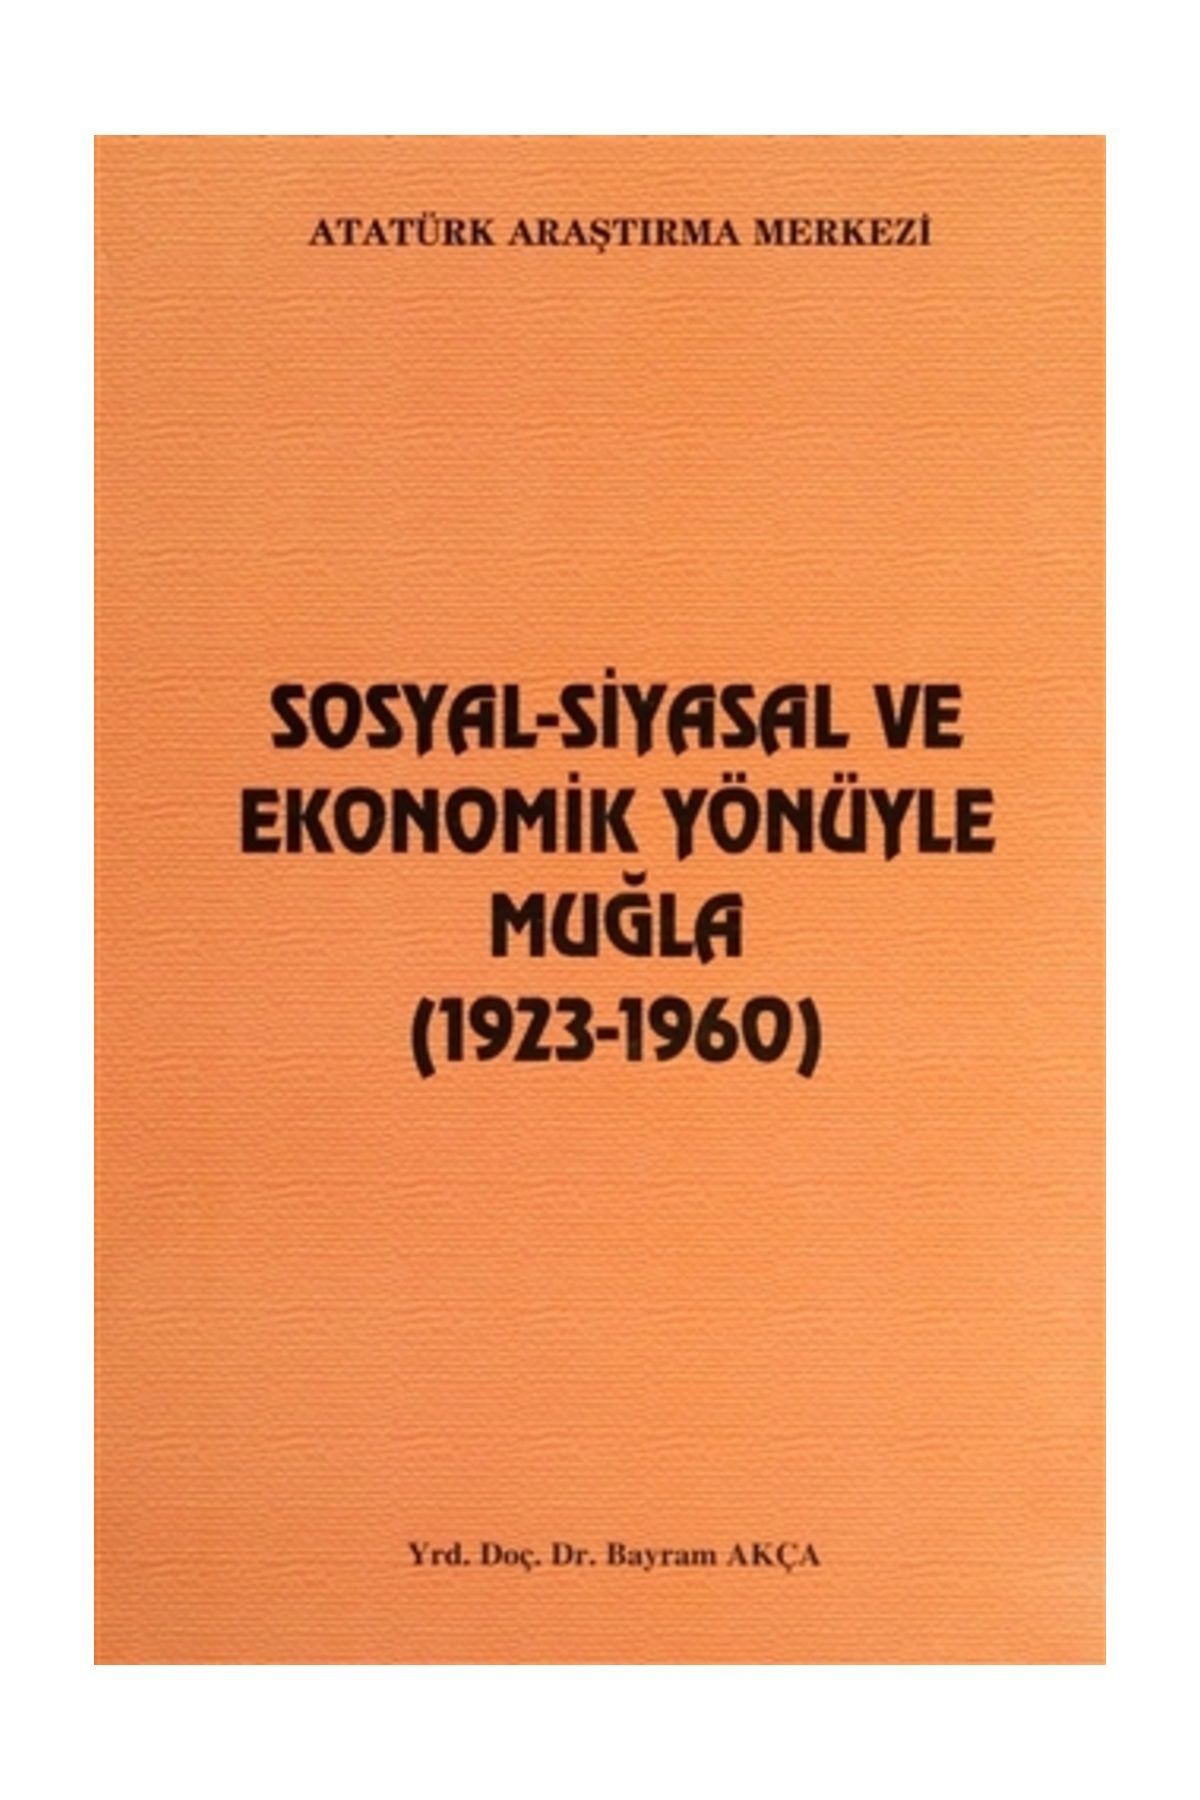 Atatürk Araştırma Merkezi Sosyal-Siyasal ve Ekonomik Yönüyle Muğla - Bayram Akça